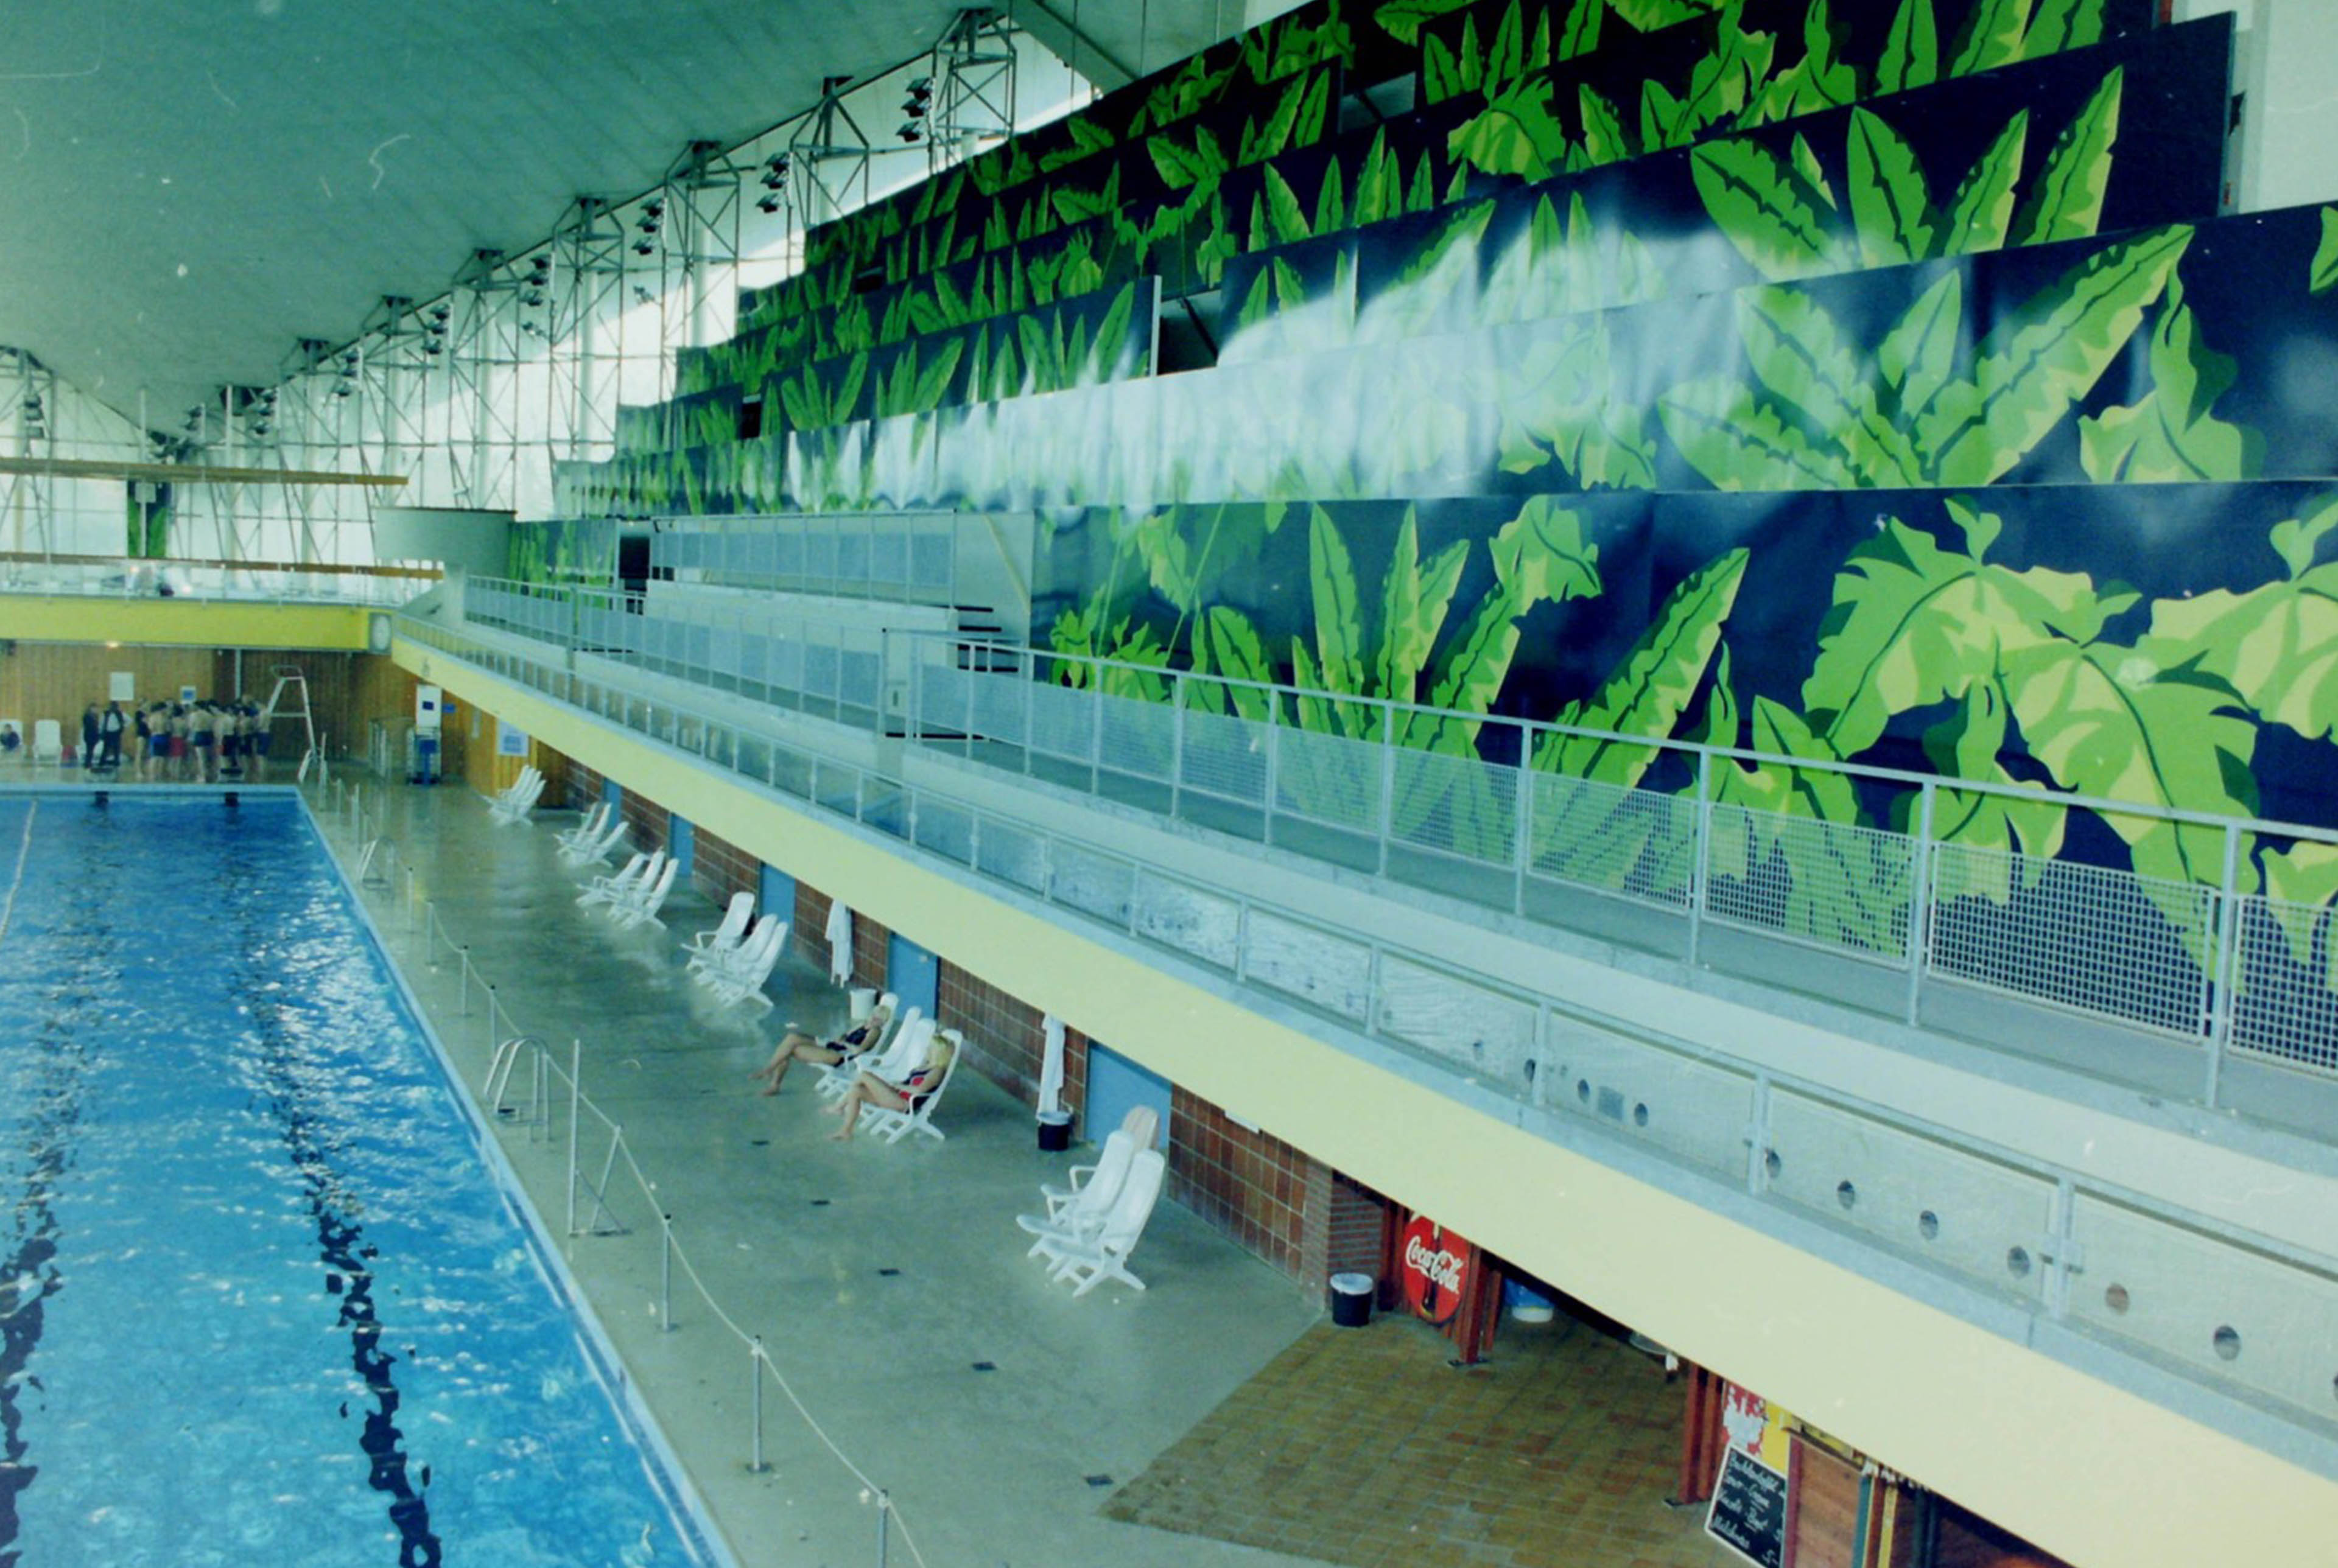 Blick auf ein Schwimmbecken in der unteren Ebene. Die ebene Darüber verzieren Palmenblätter die Wände